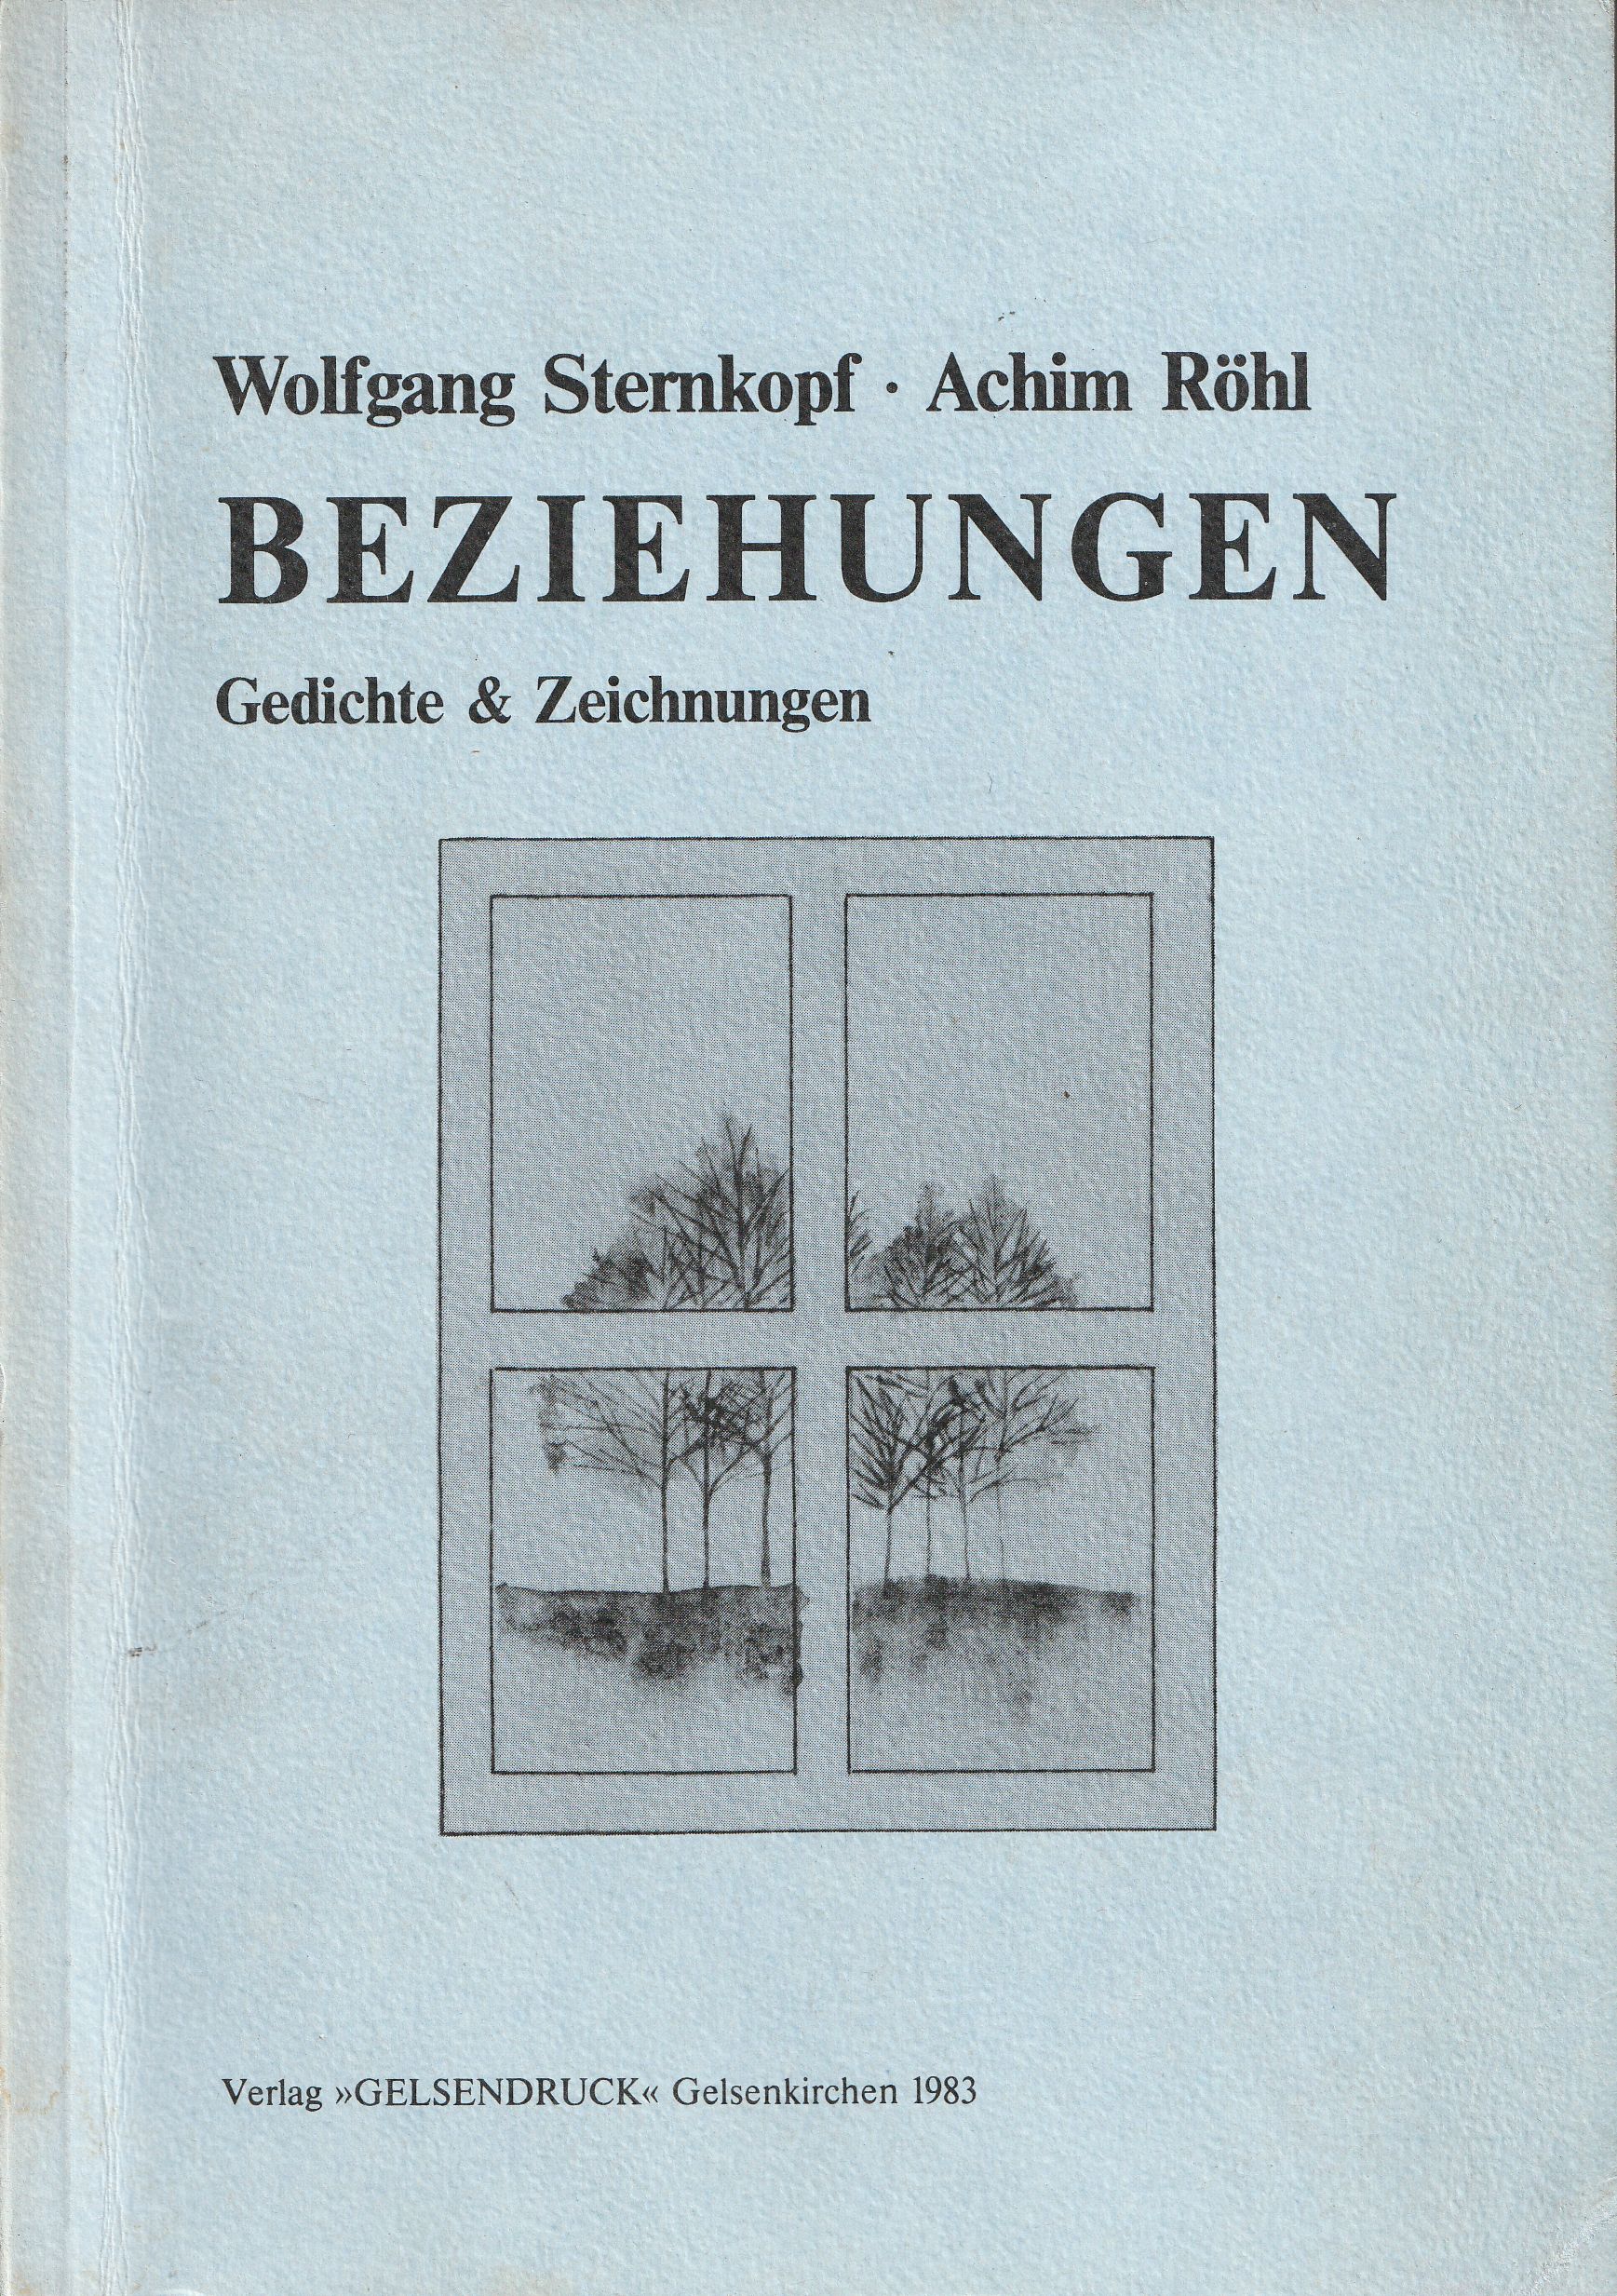 Beziehungen. Gedichte & Zeichnungen. - Sternkopf, Wolfgang / Röhl, Achim